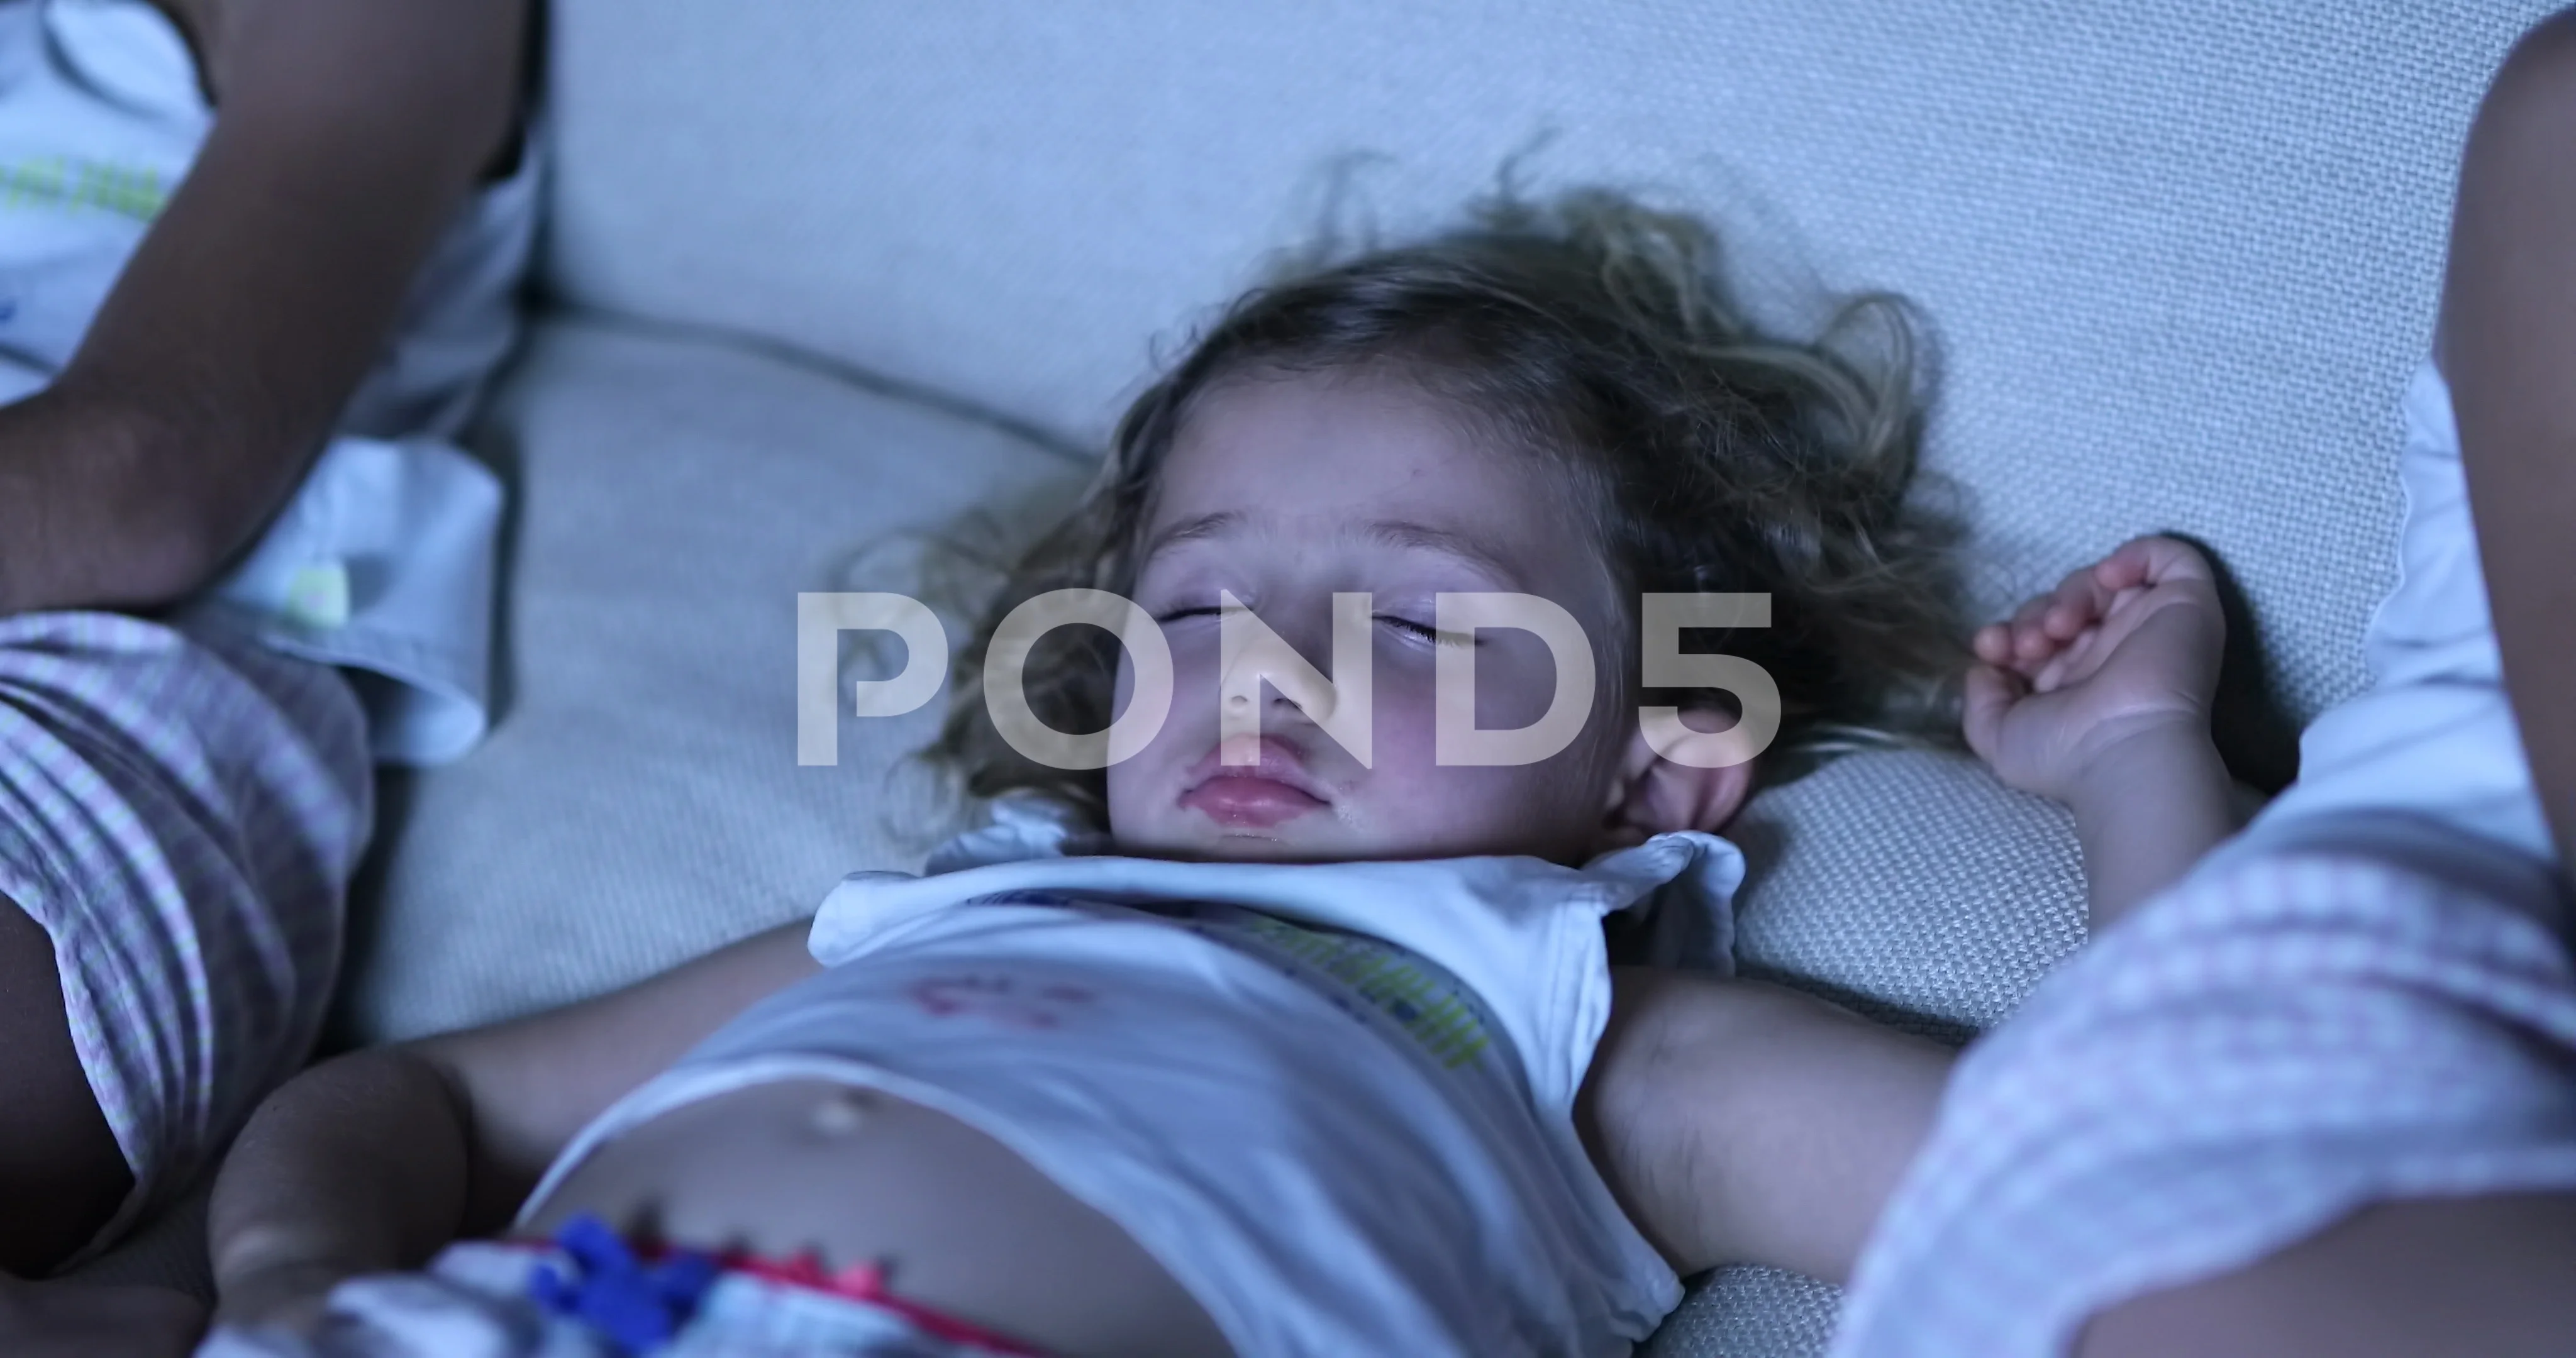 https://images.pond5.com/little-girl-asleep-sofa-front-116719951_prevstill.jpeg